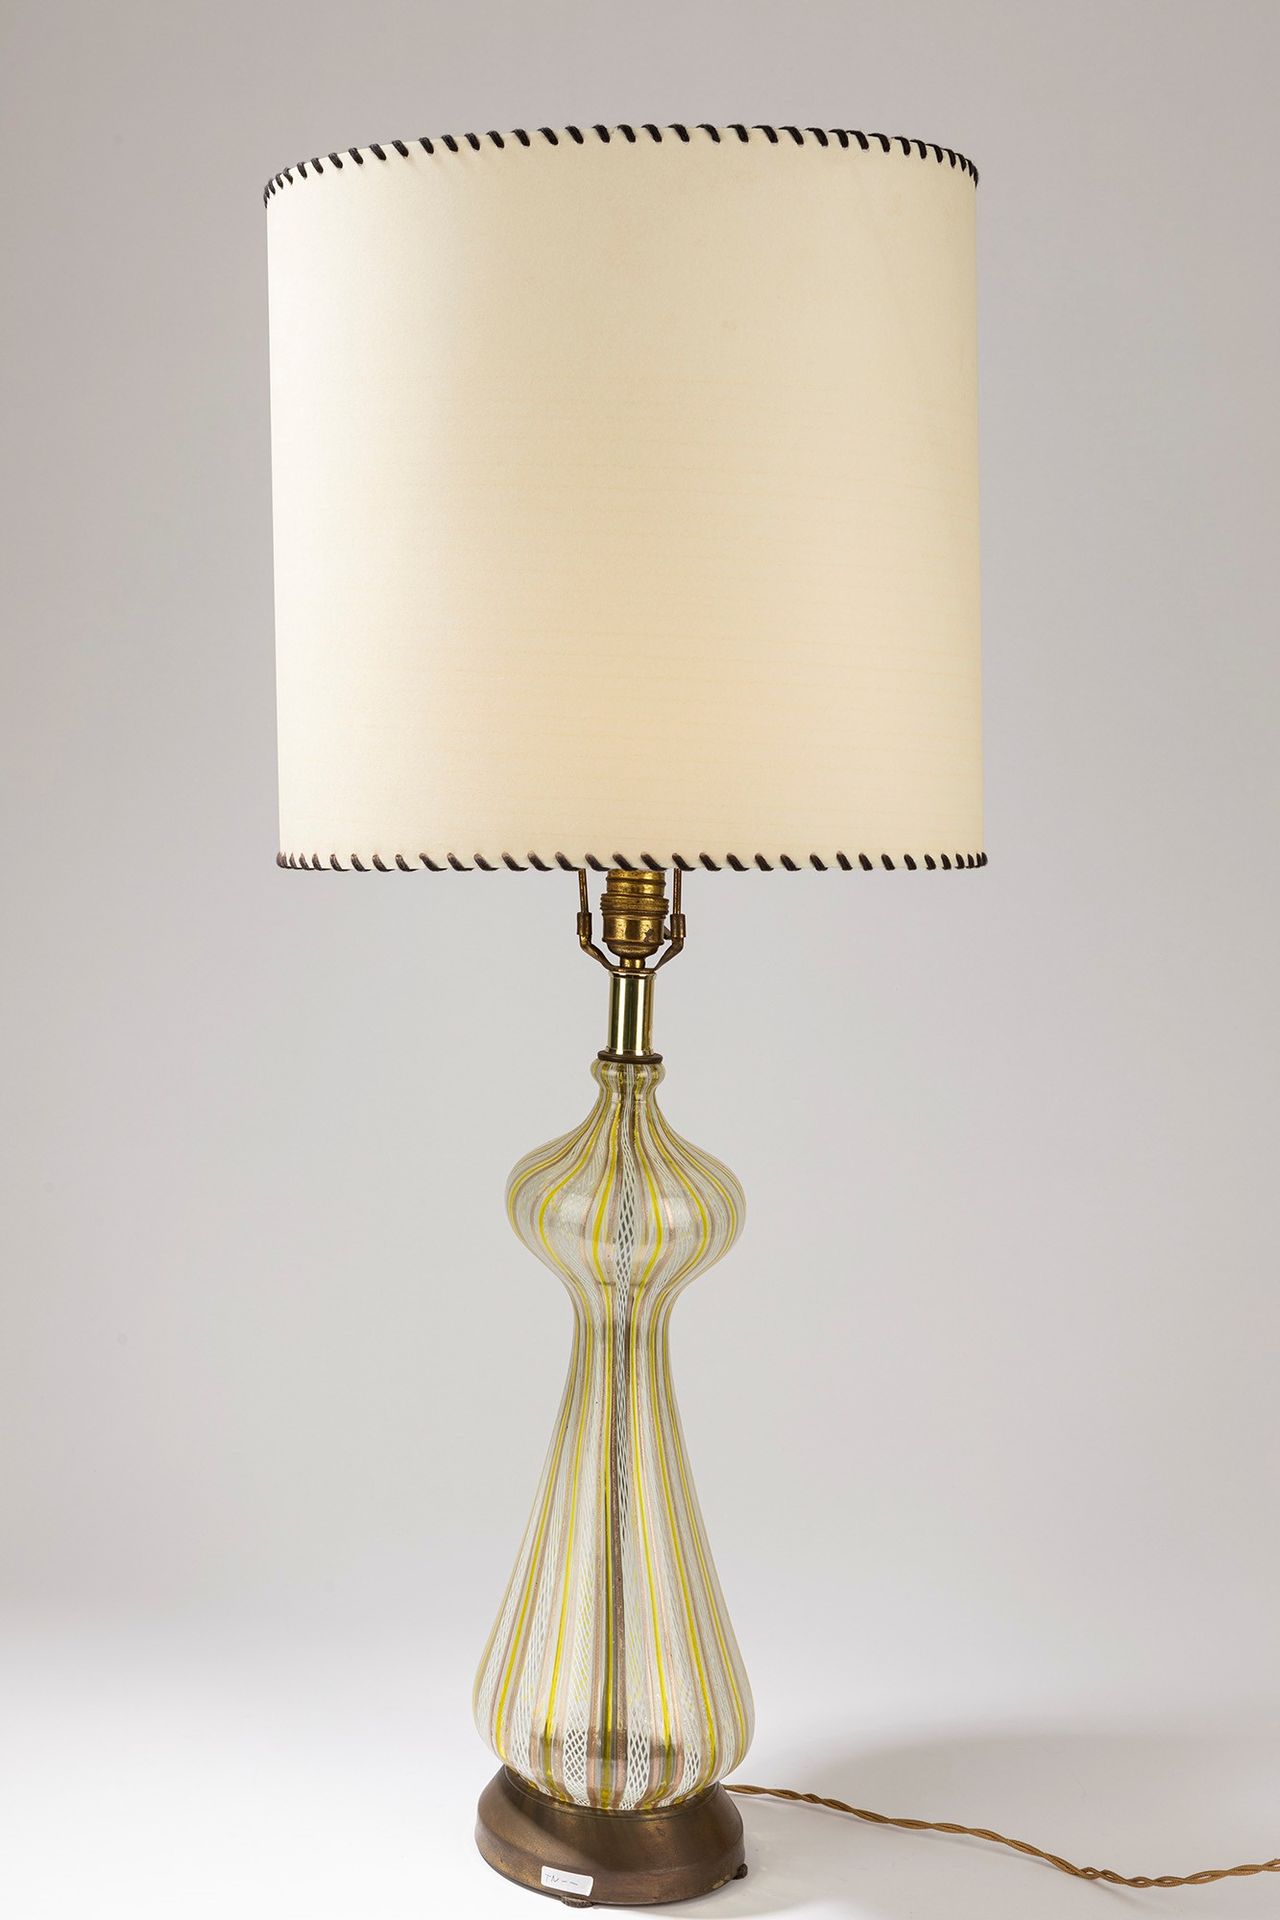 SEGUSO Lámpara de mesa, época de los años 30

dm 15 cm, H 82 cm
vidrio soplado.